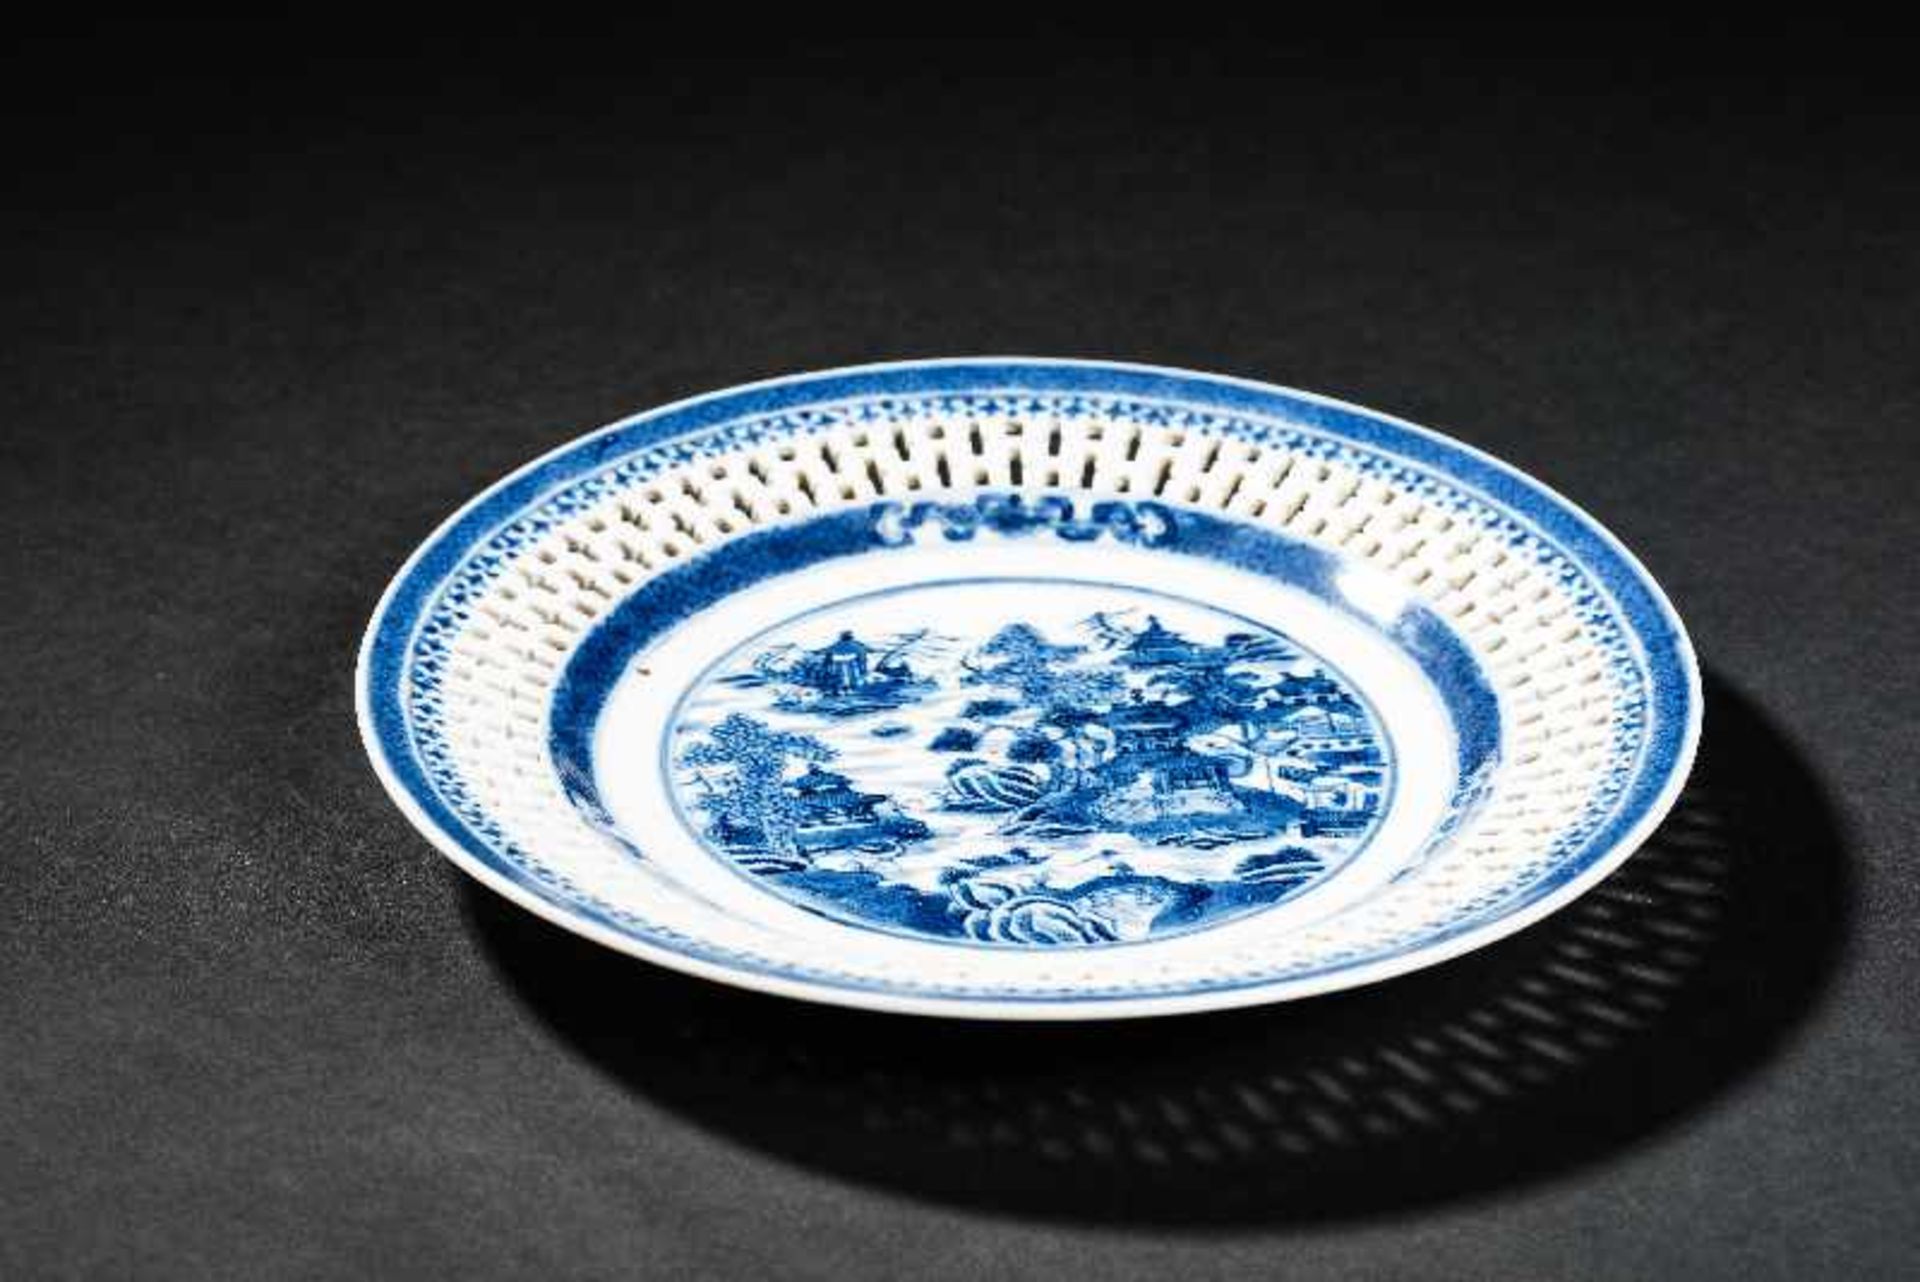 DEKORATIVER TELLER MIT TEMPELLANDSCHAFT Blauweiß-Porzellan. China, Jiaqing-Periode der Qing- - Bild 3 aus 4